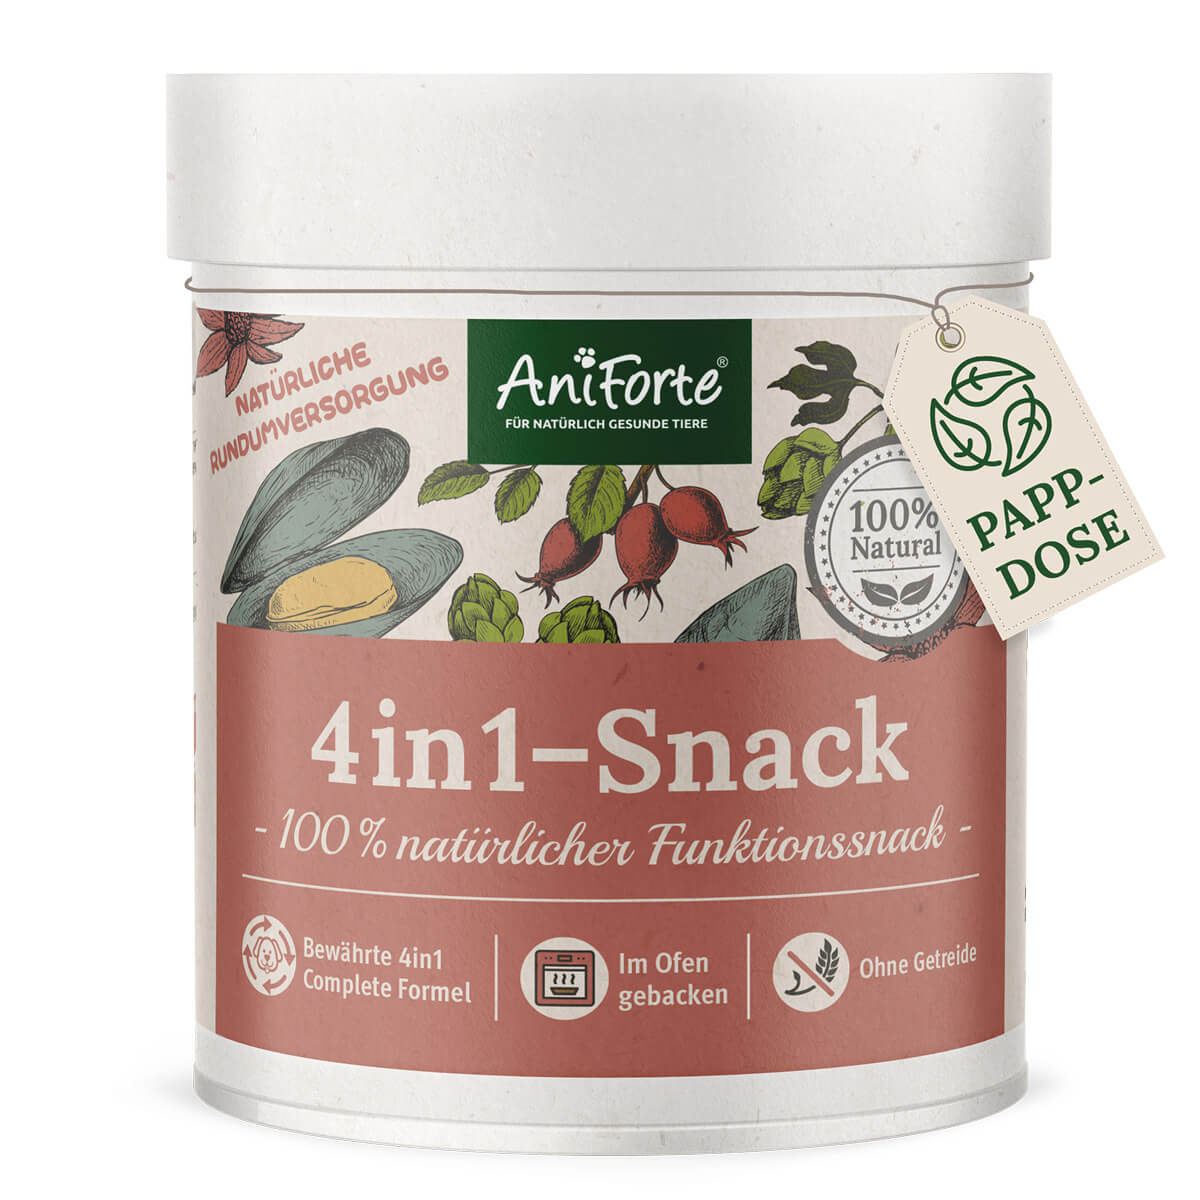 4in1-Snack von AniForte